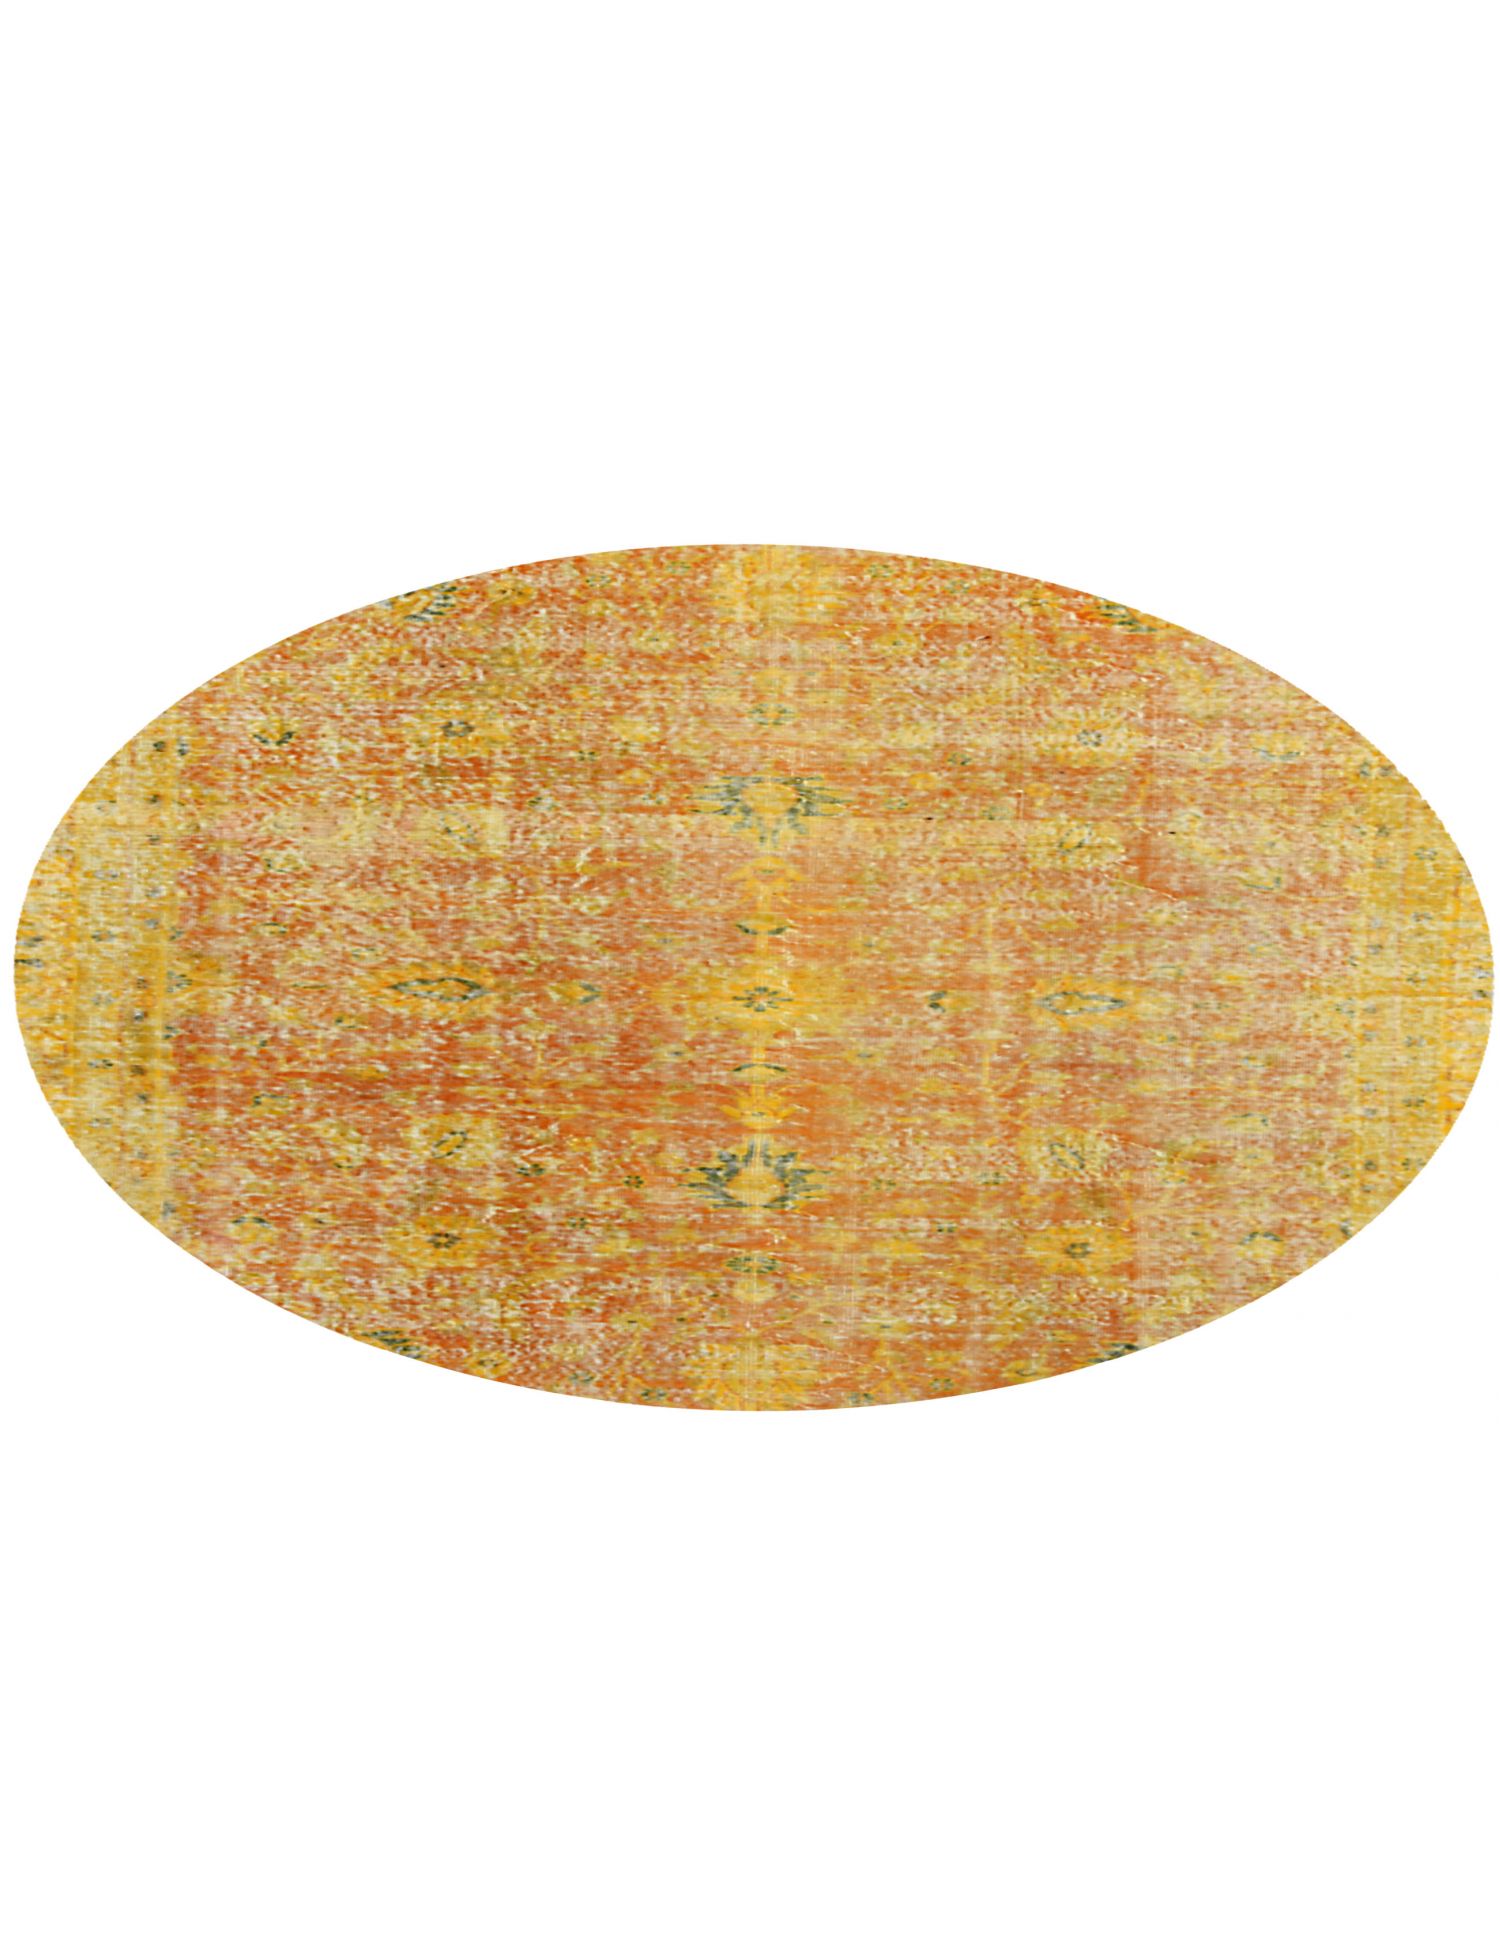 Rund Vintage Teppich  gelb <br/>177 x 177 cm